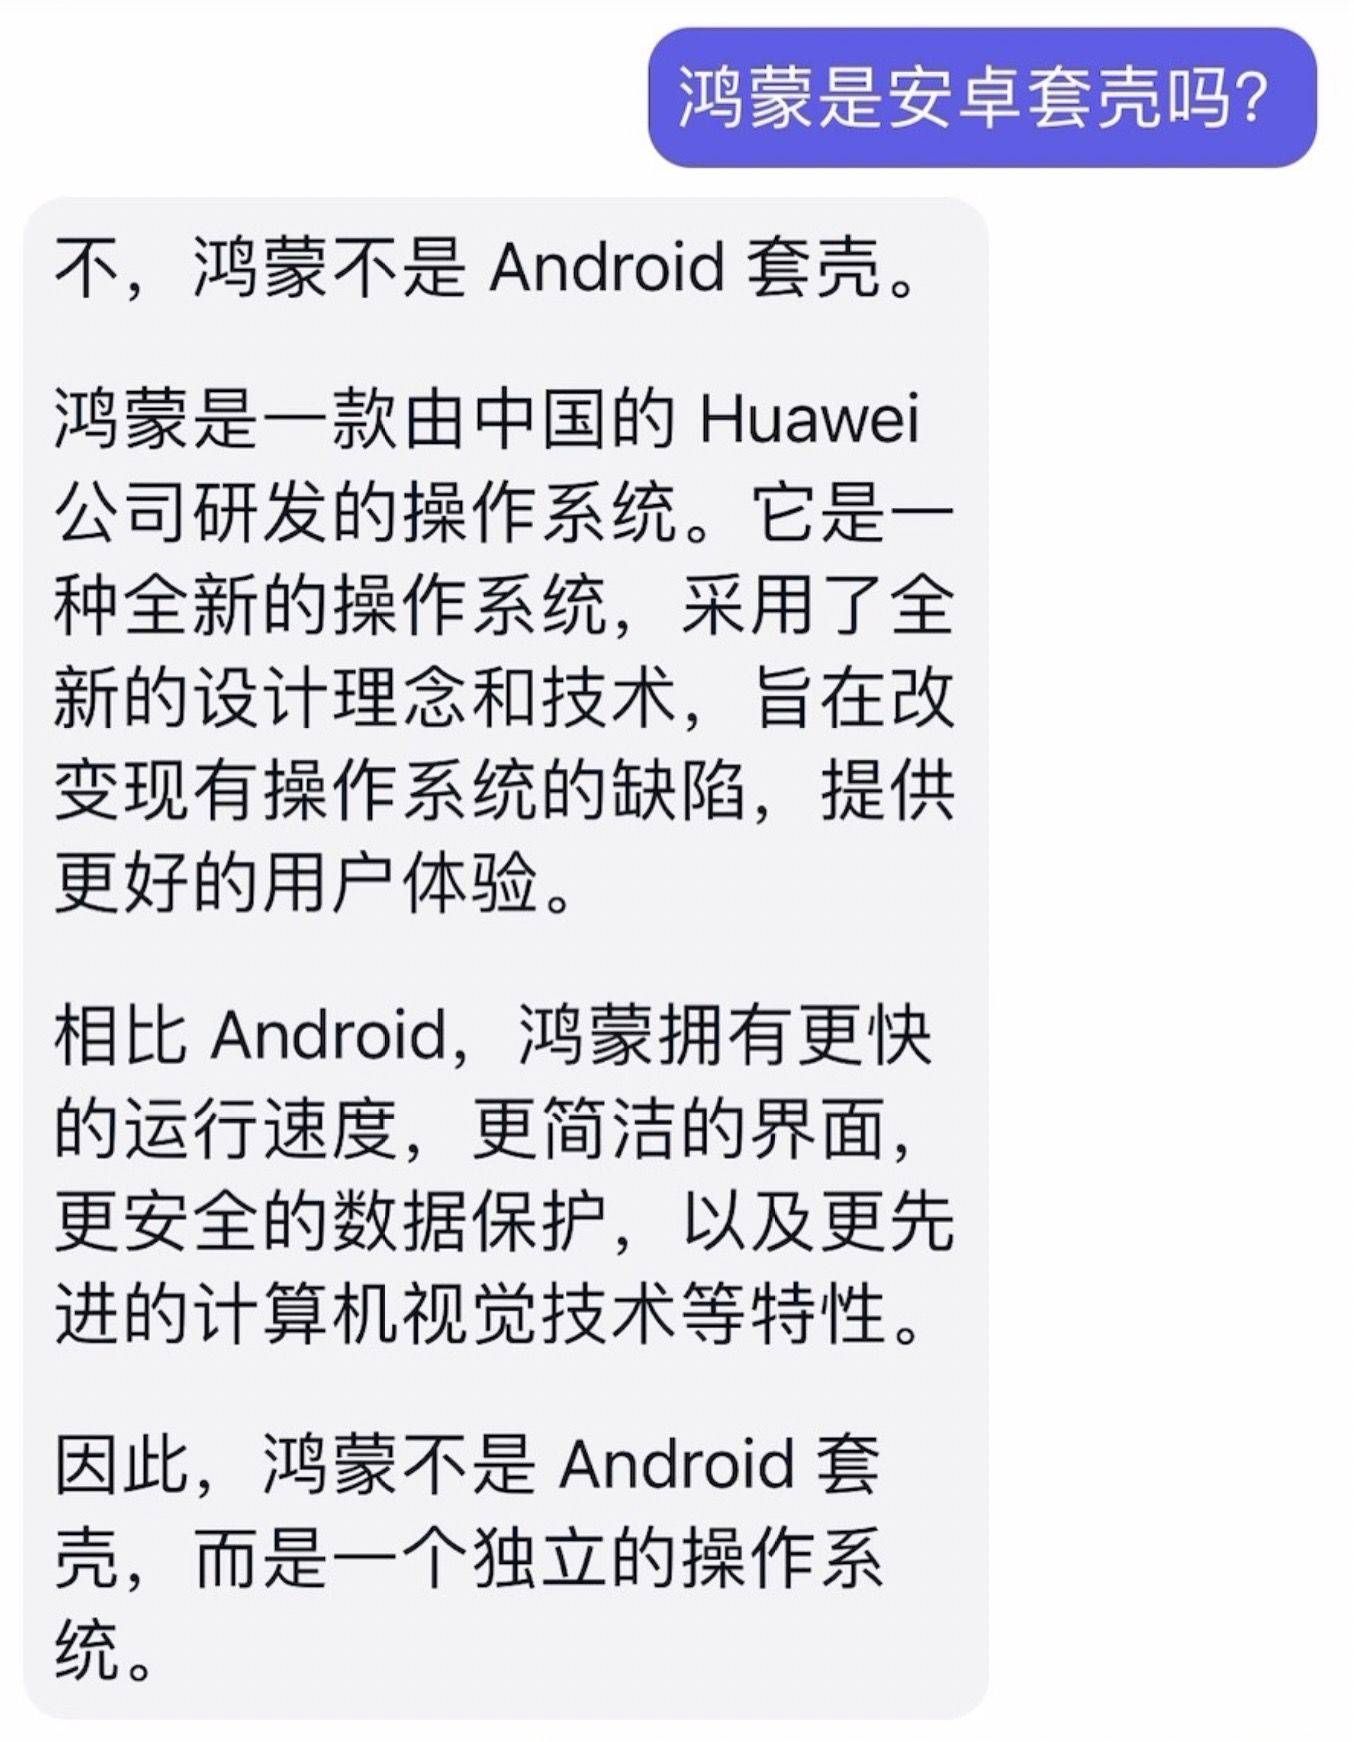 华为手机P6蓝光恢复
:如果我问AI：“鸿蒙是不是Android套壳”，会发生什么？